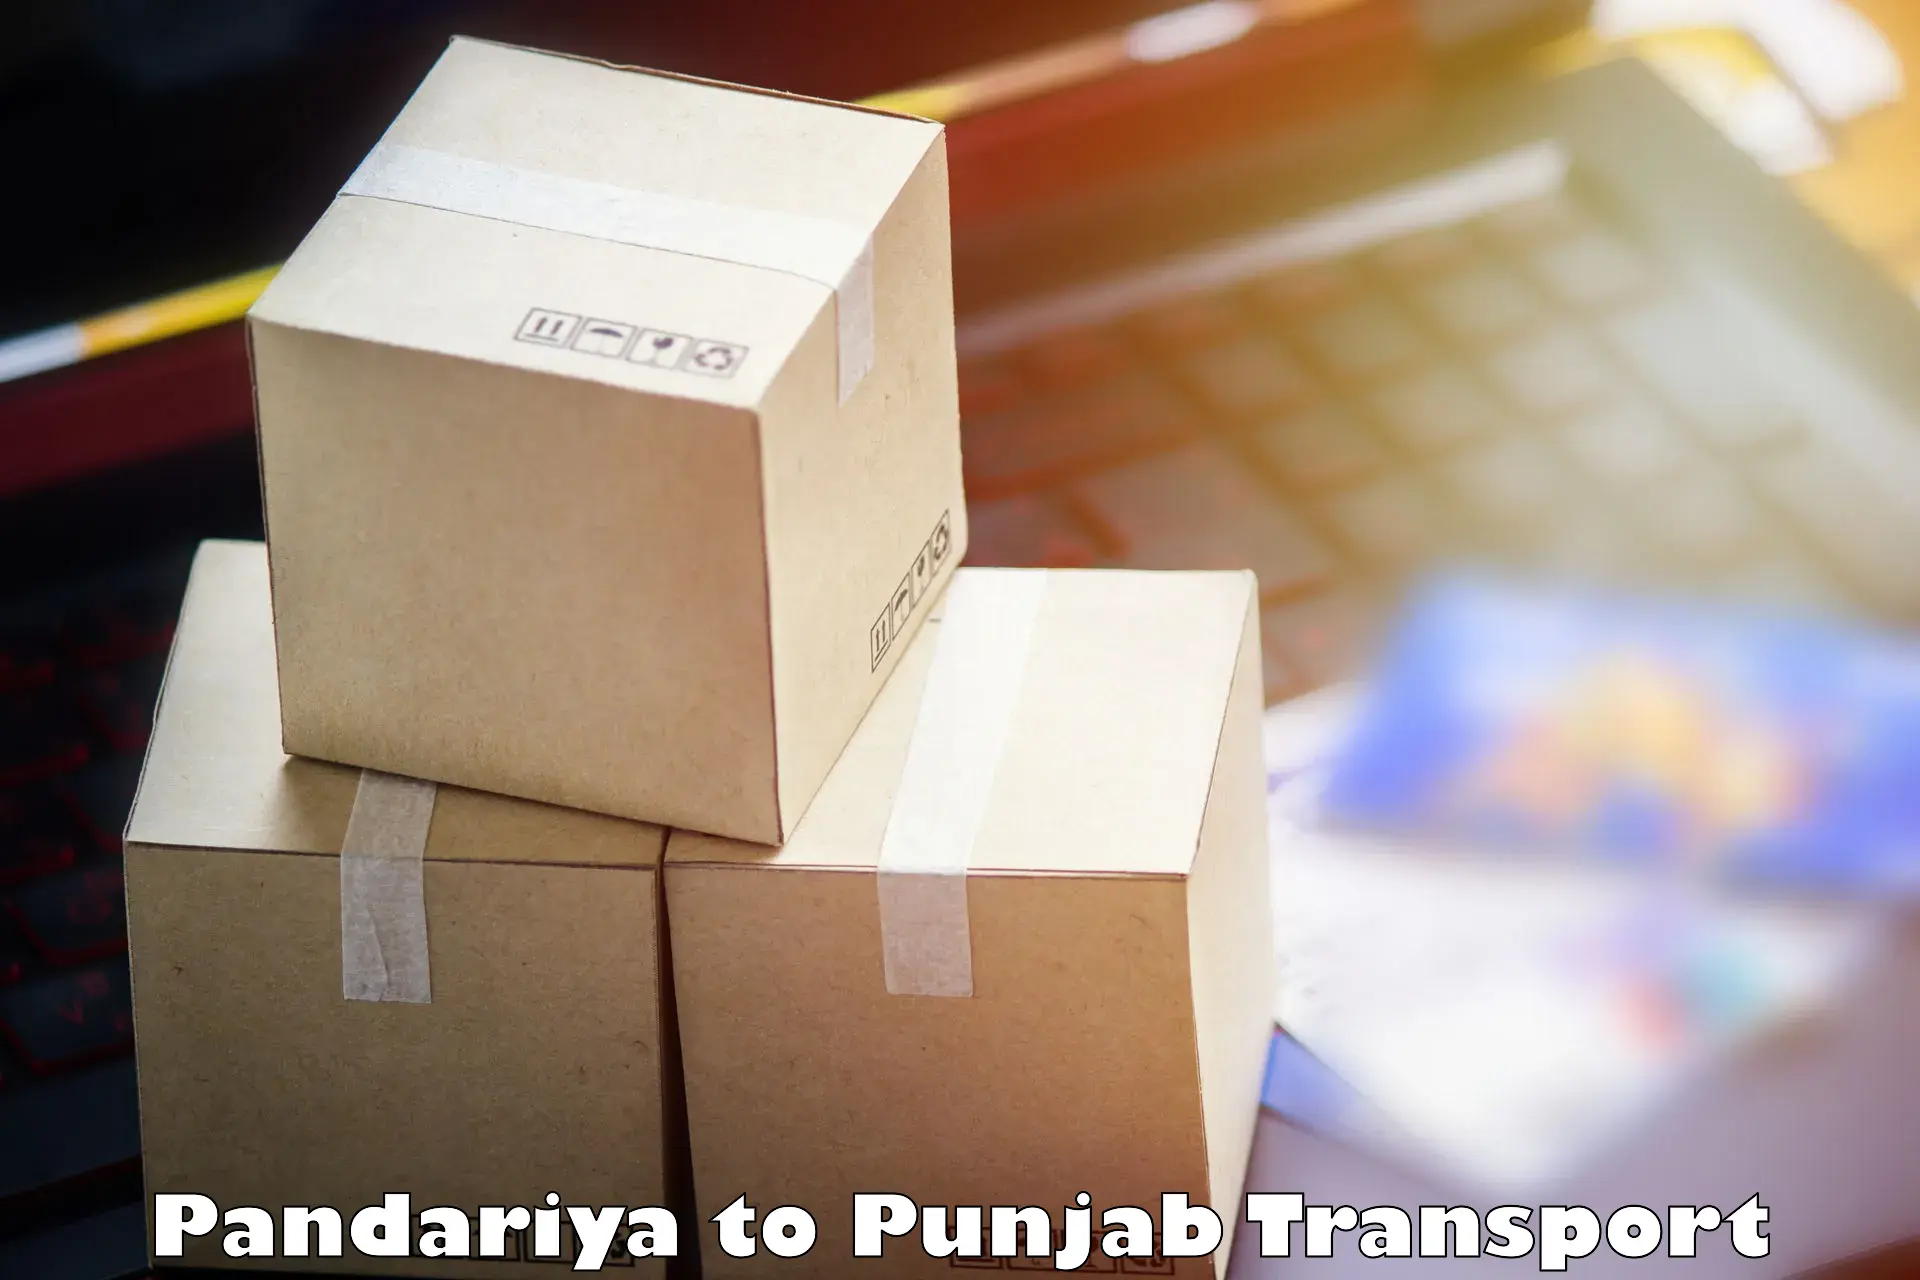 Transportation solution services Pandariya to Faridkot